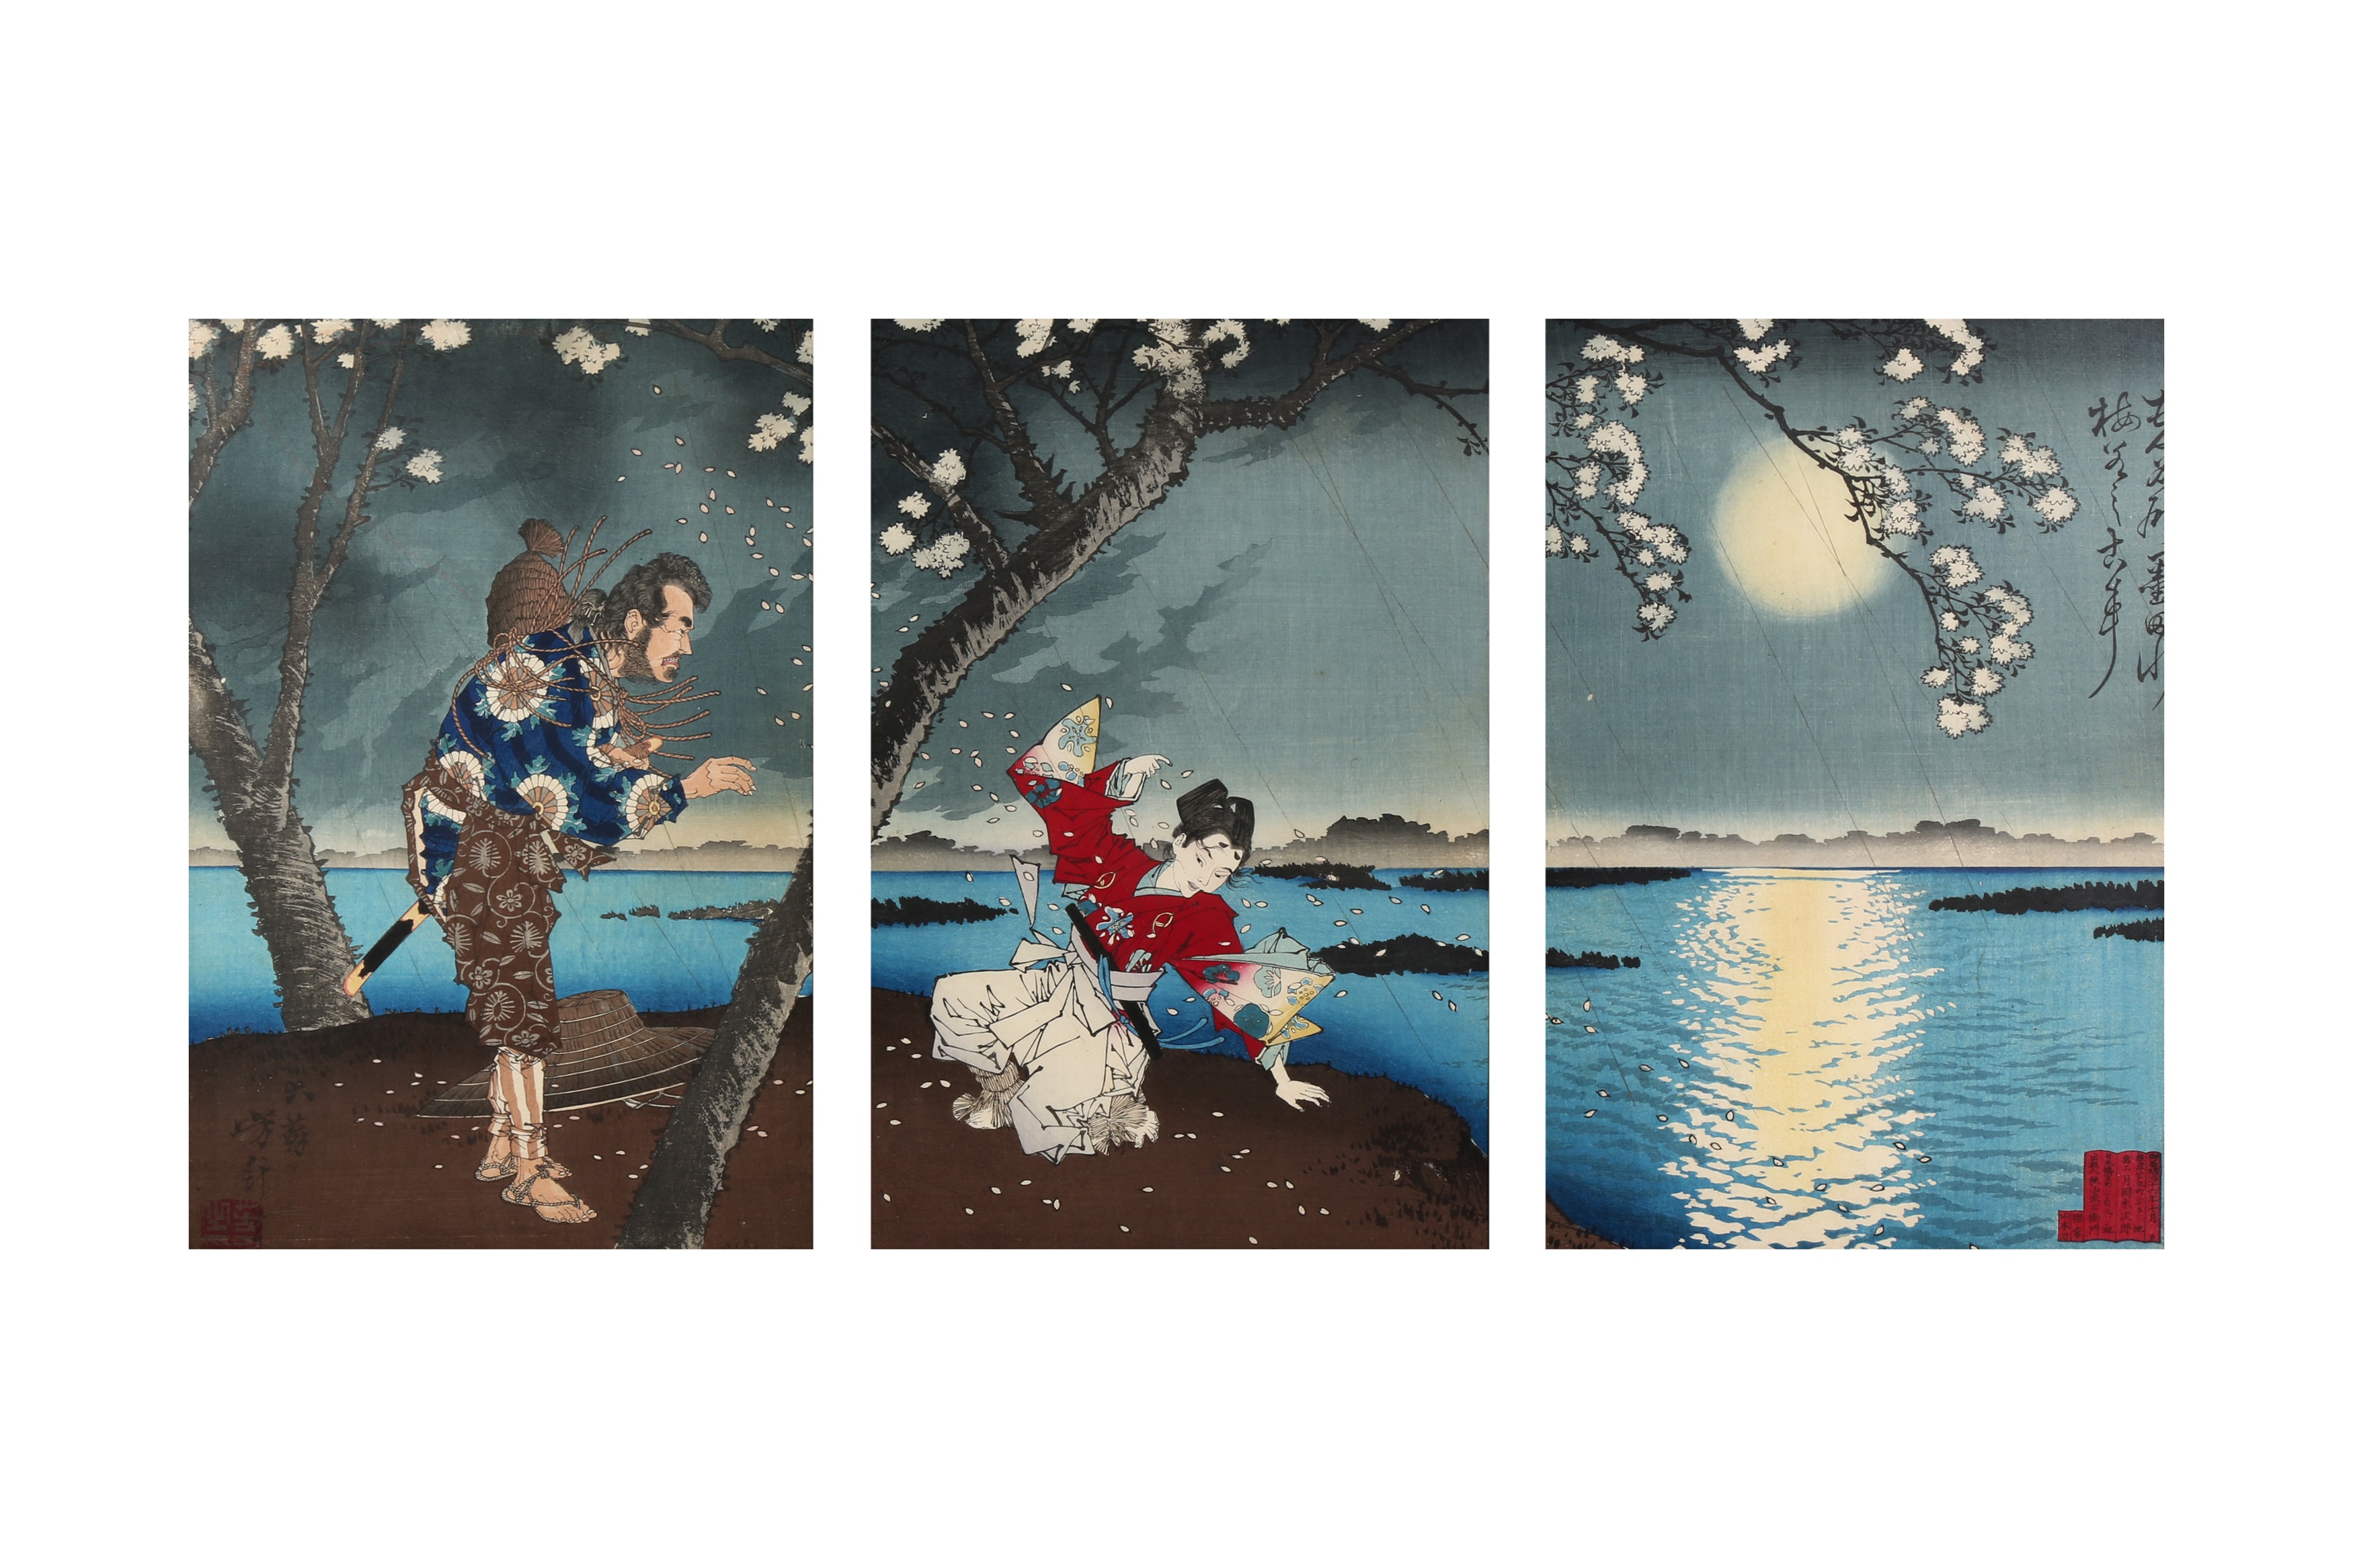 TSUKIOKA YOSHITOSHI (1797 – 1858), MIYAGAWA SHUNTEI (1873 – 1914) Two Japanese woodblock print tript - Image 4 of 23